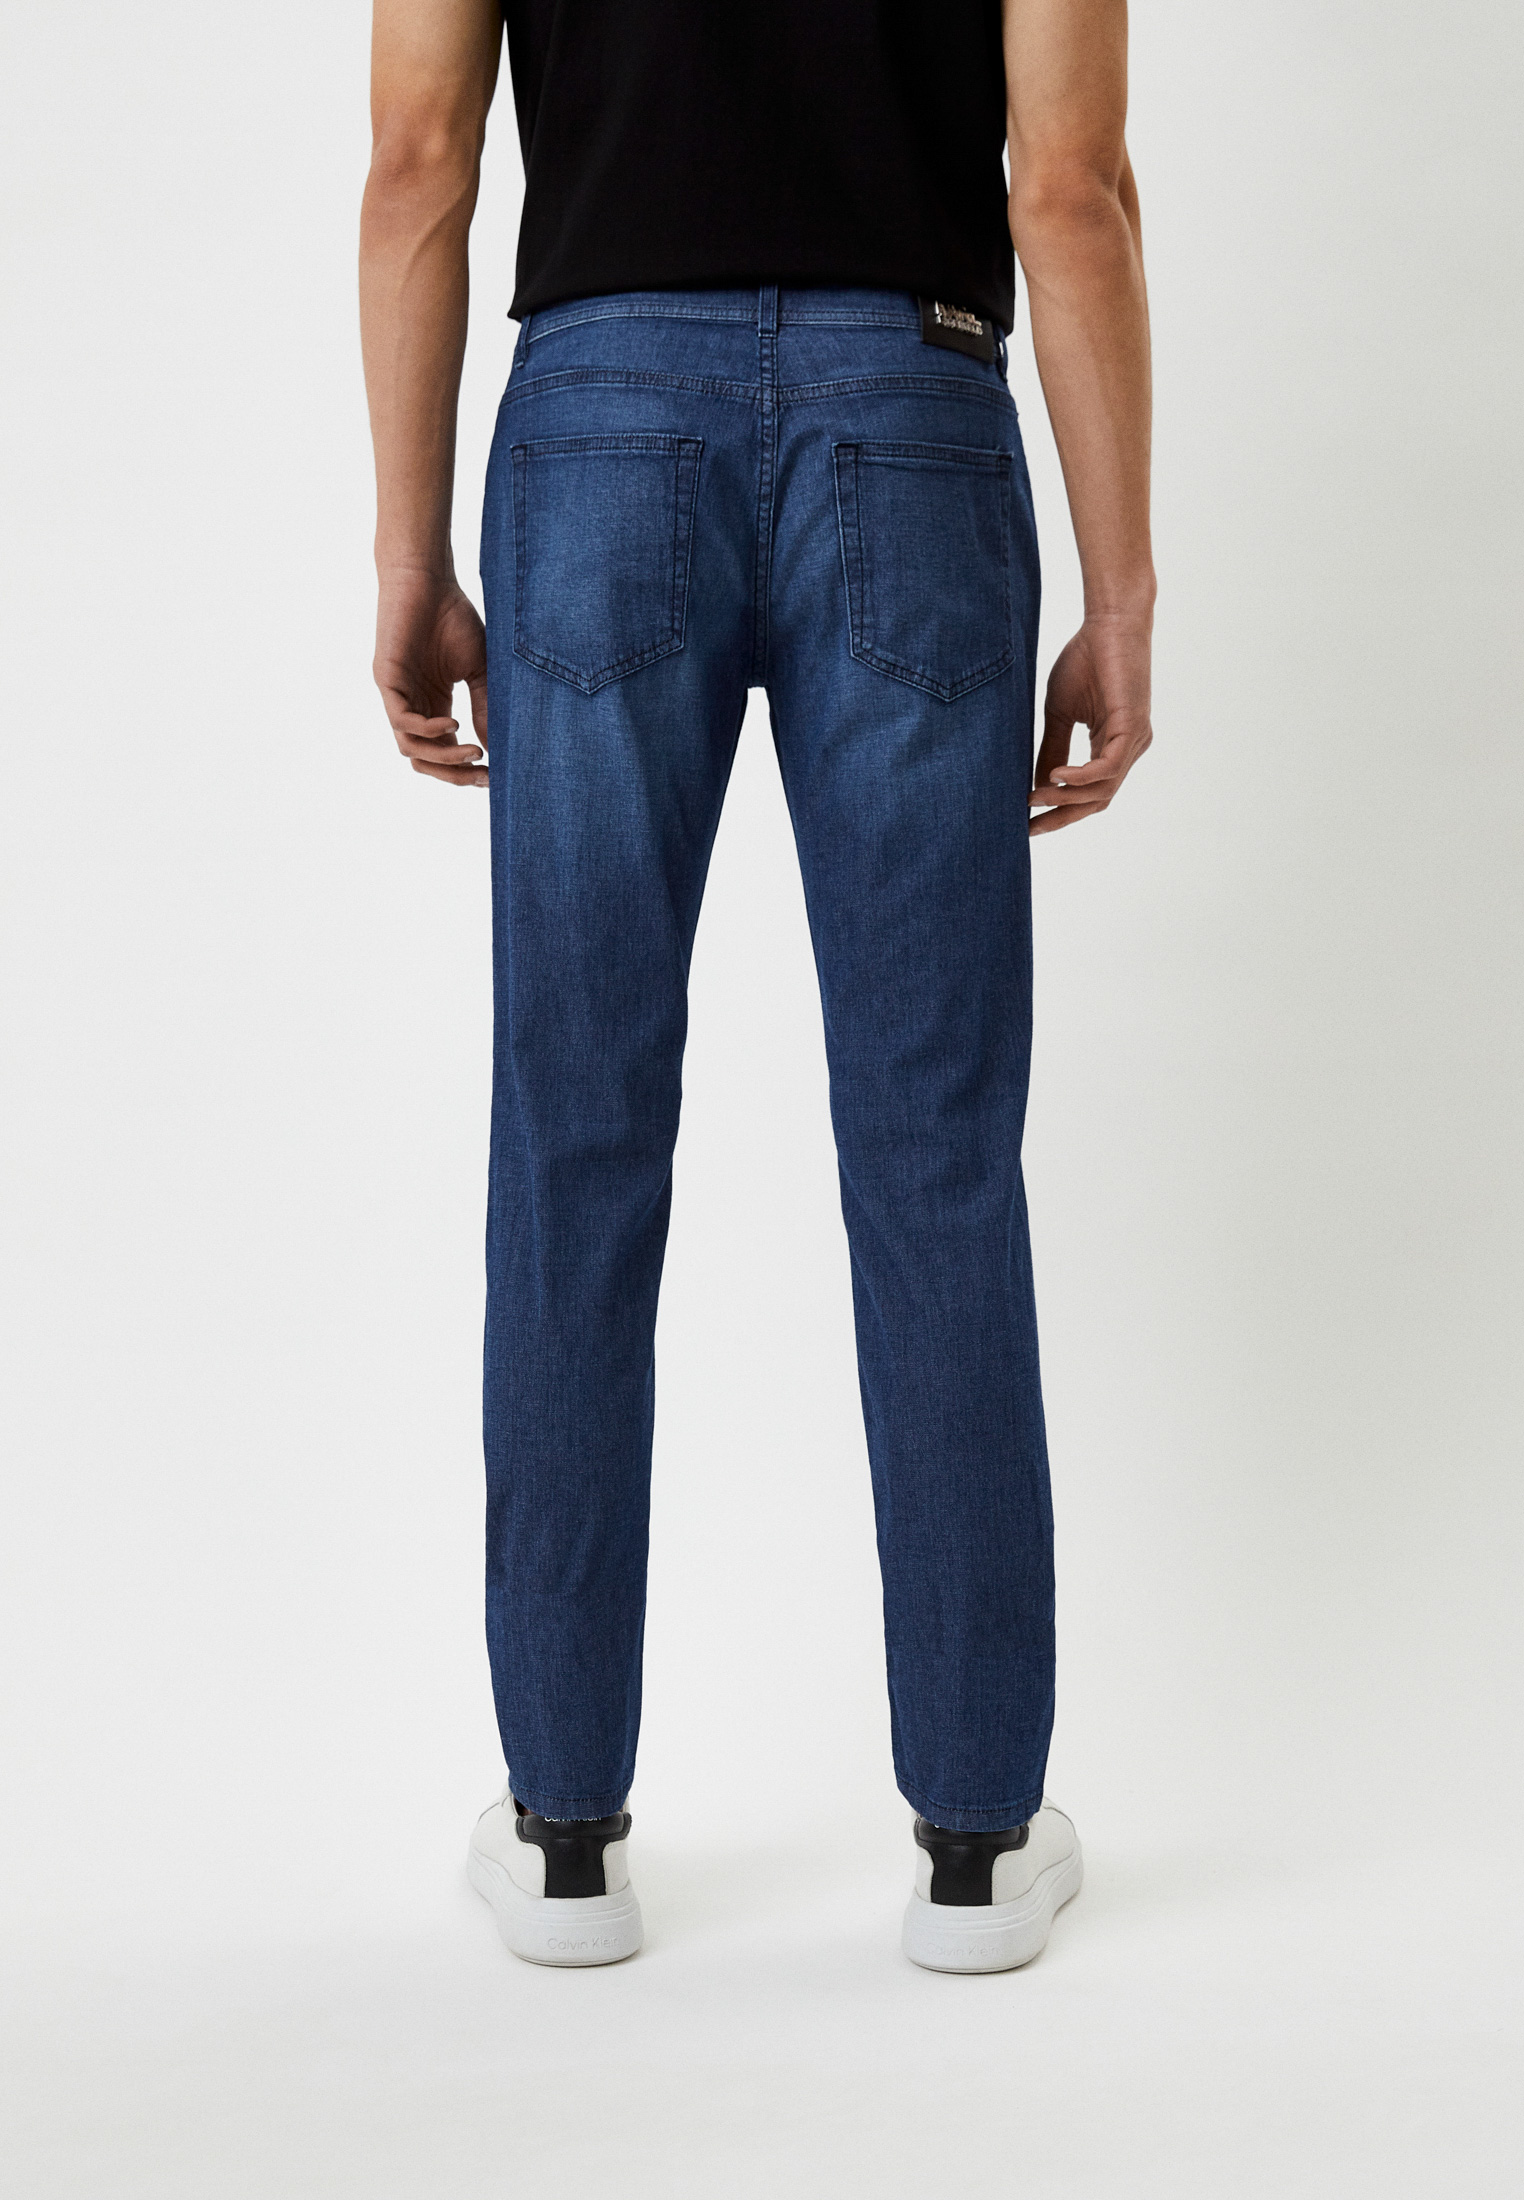 Мужские зауженные джинсы Karl Lagerfeld (Карл Лагерфельд) 265840-532806: изображение 3